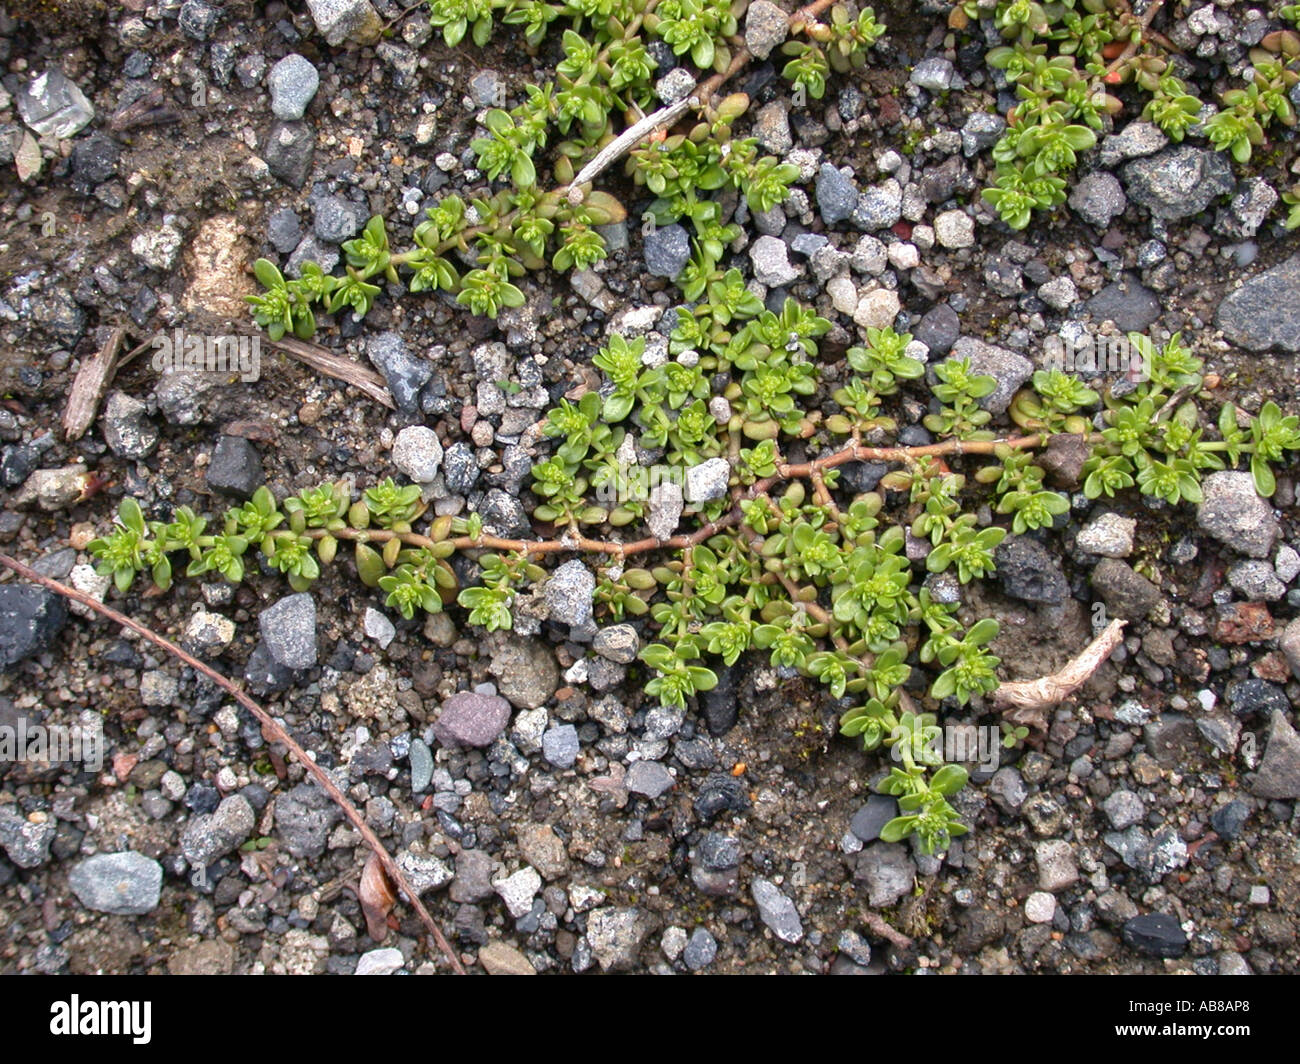 smooth rupturewort, smooth burstwort (Herniaria glabra), plant on gravelly ground Stock Photo